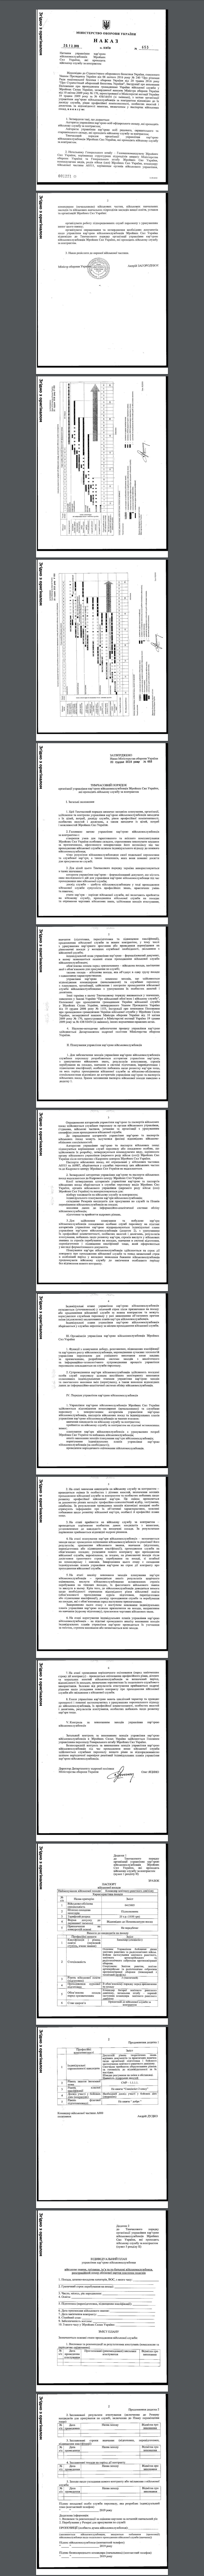 https://www.mil.gov.ua/content/mou_orders/653_mou.pdf